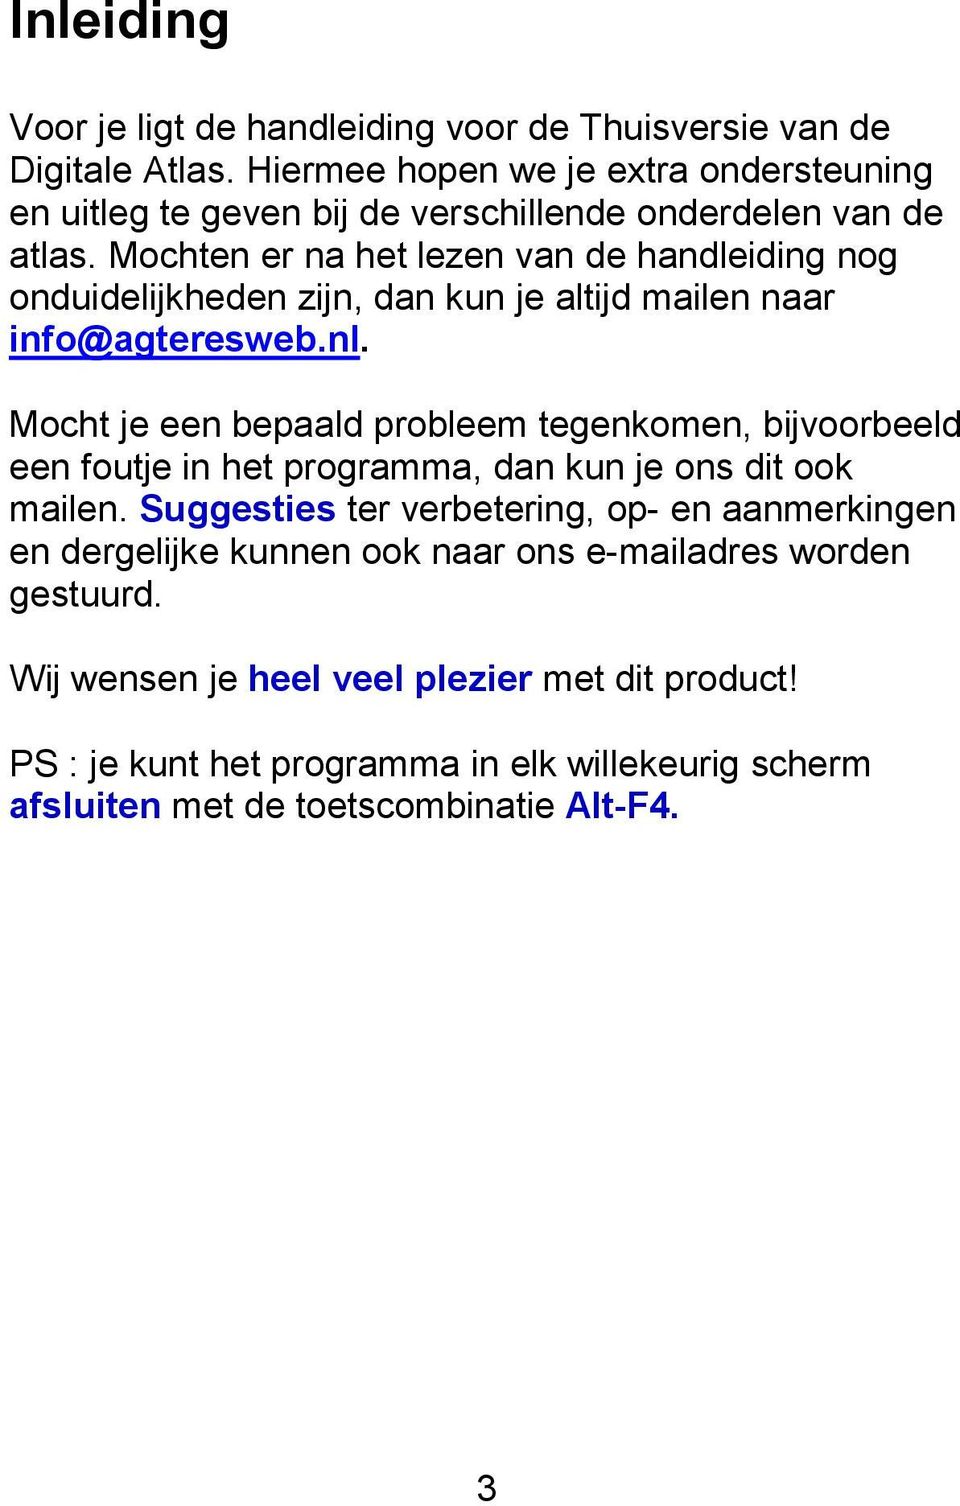 Mochten er na het lezen van de handleiding nog onduidelijkheden zijn, dan kun je altijd mailen naar info@agteresweb.nl.